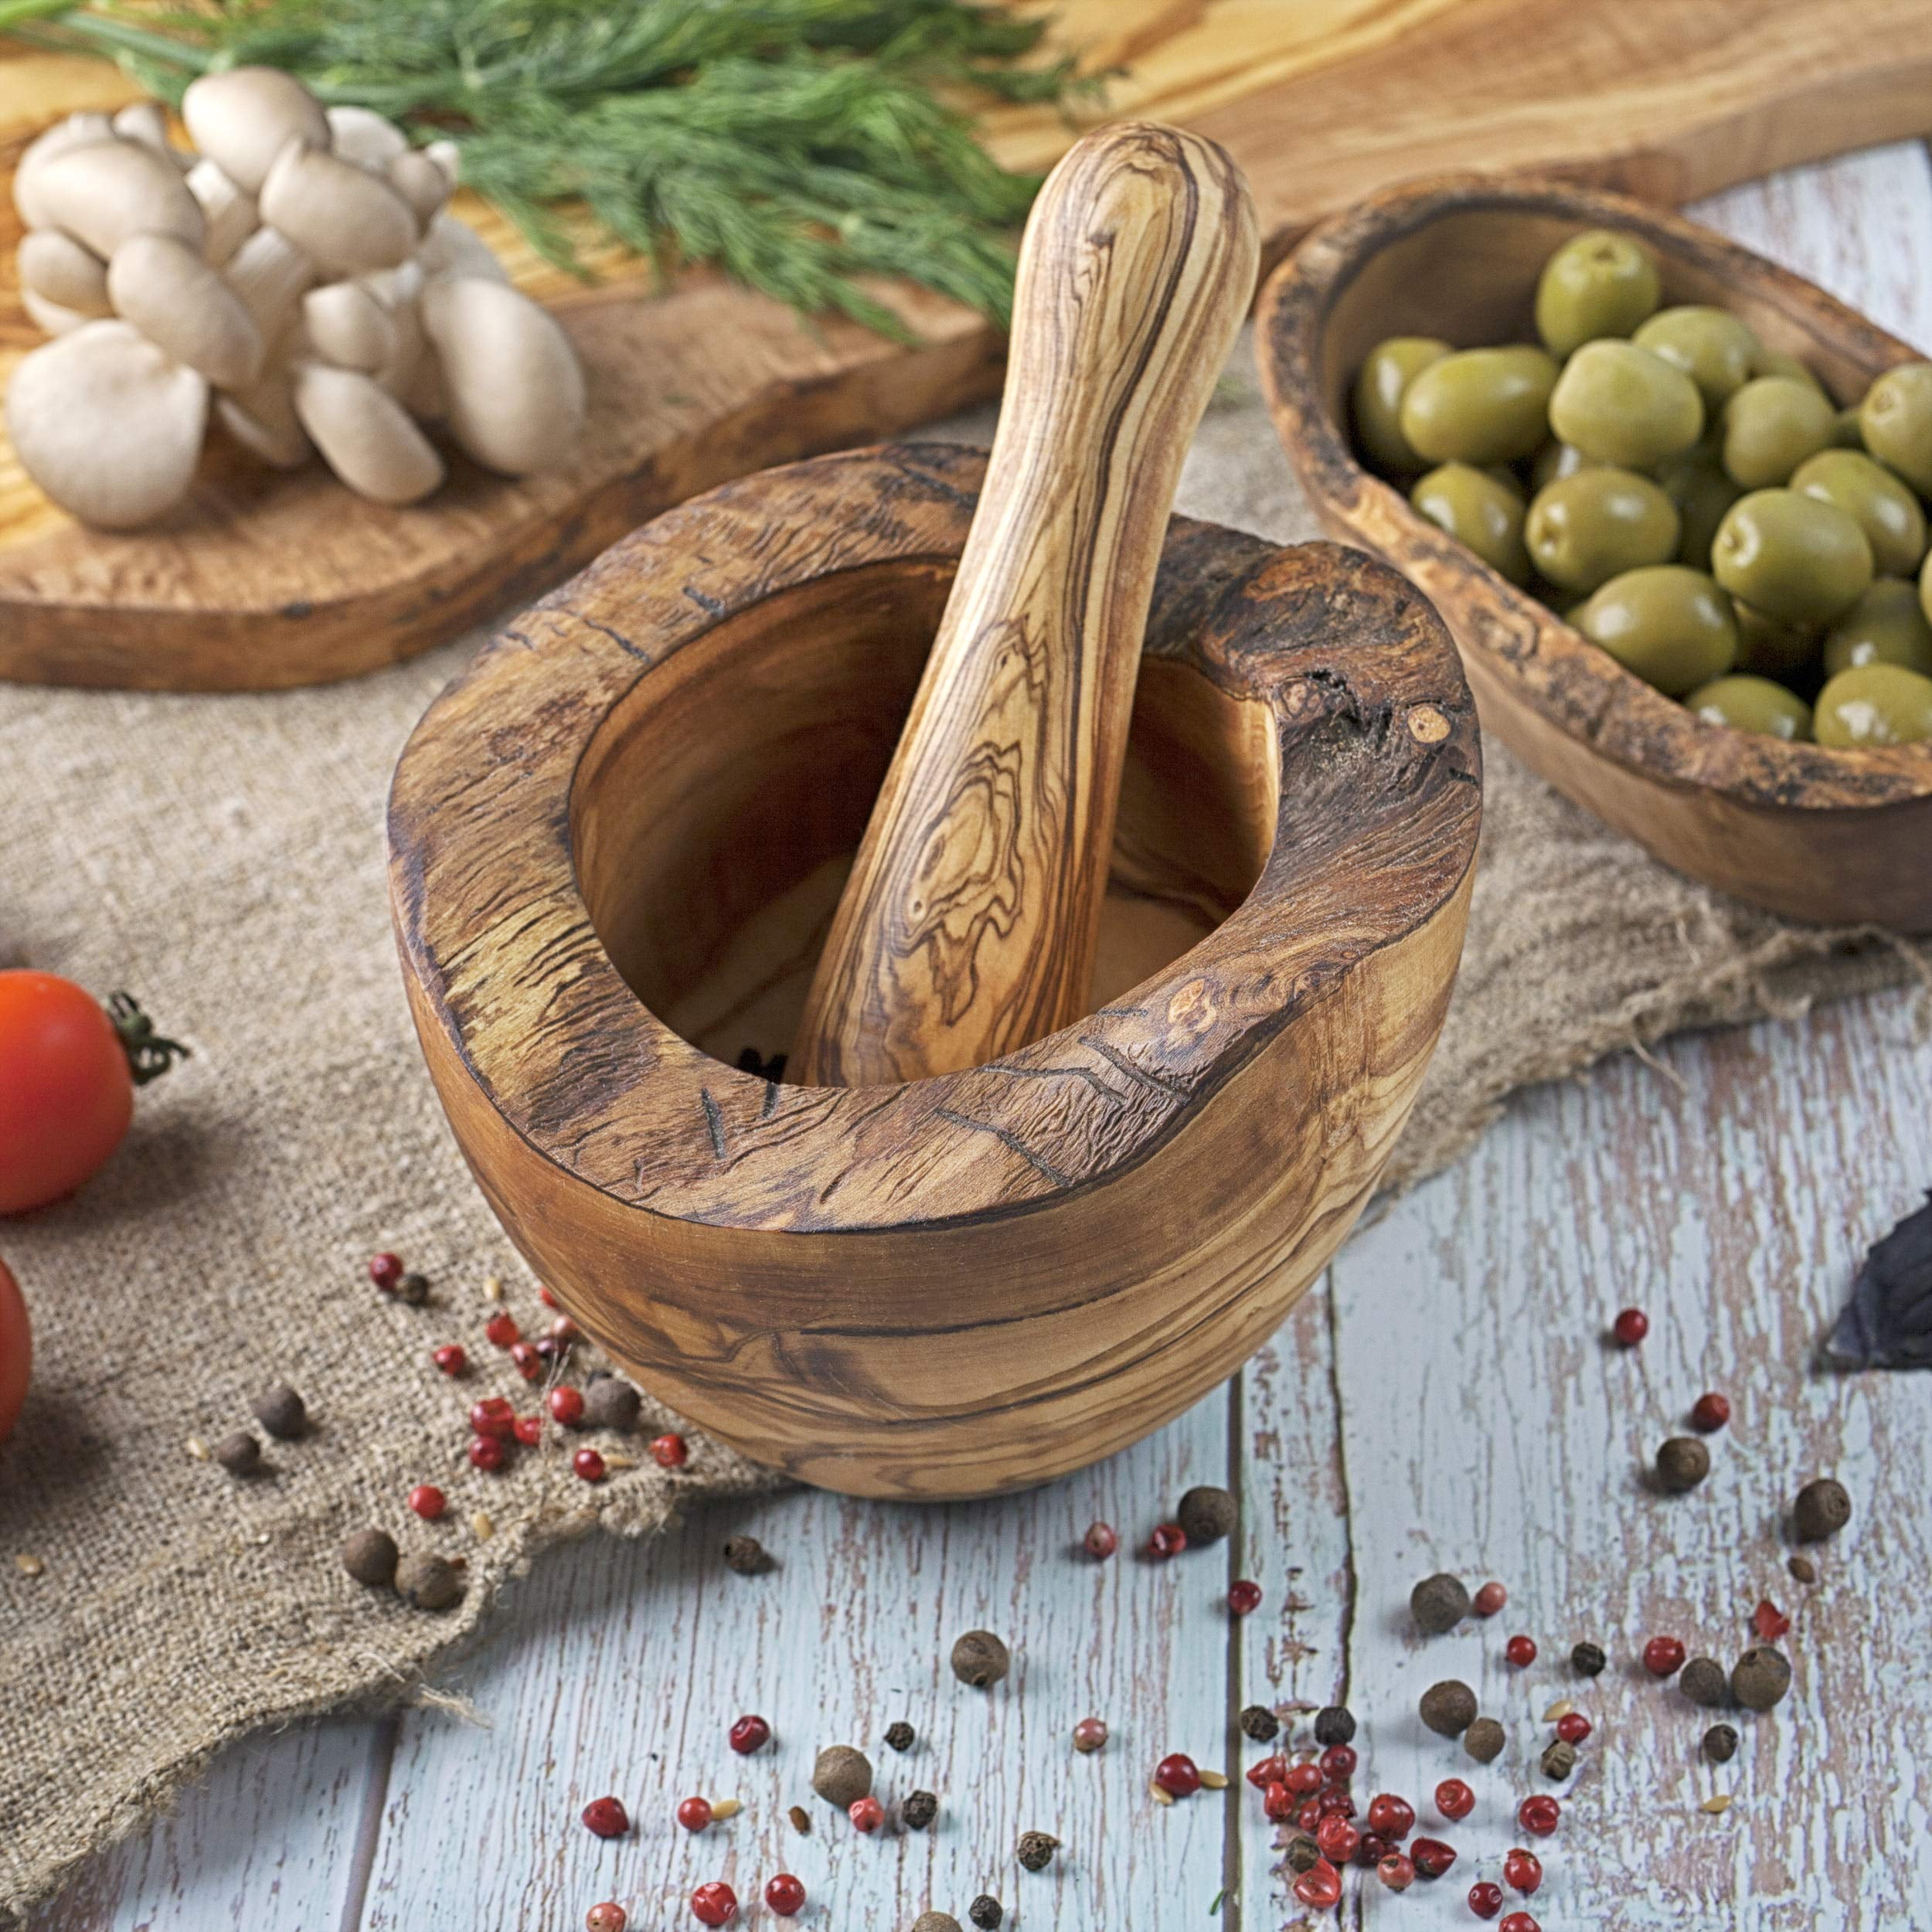 Spice GRINDER HERBS DE PROVENCE - Olive Wood - Provence Kitchen®